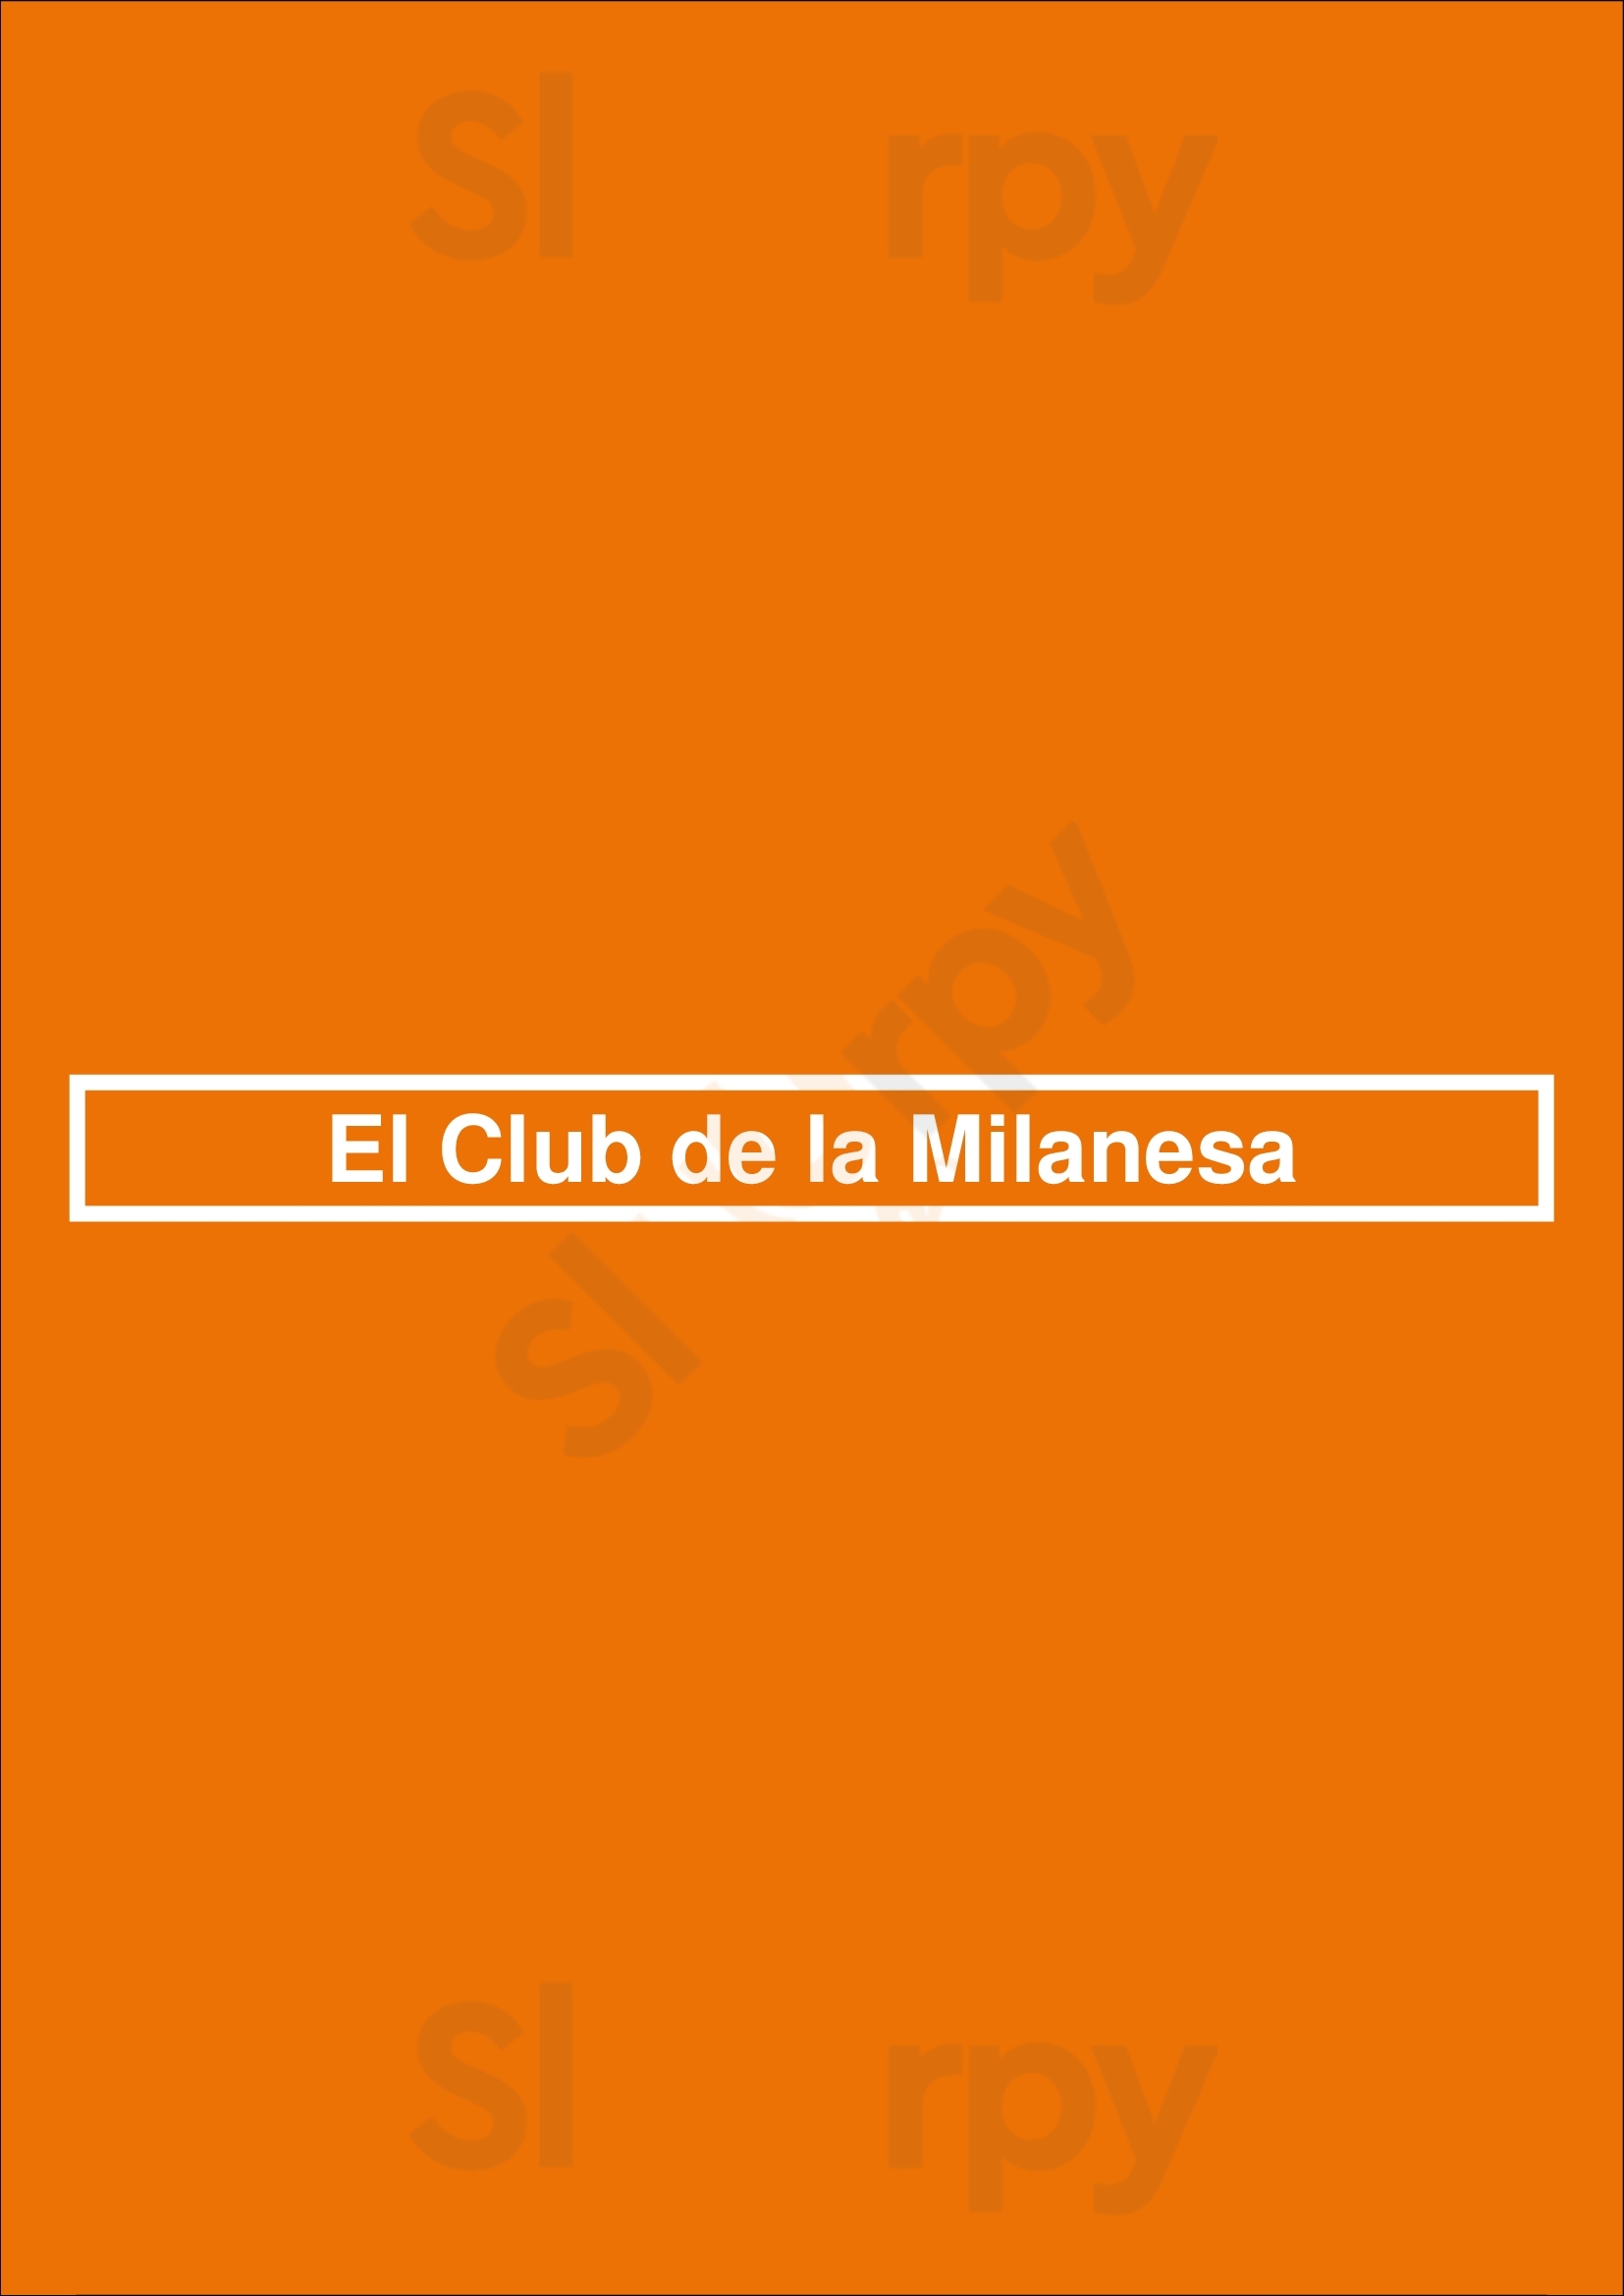 El Club De La Milanesa Córdoba Menu - 1